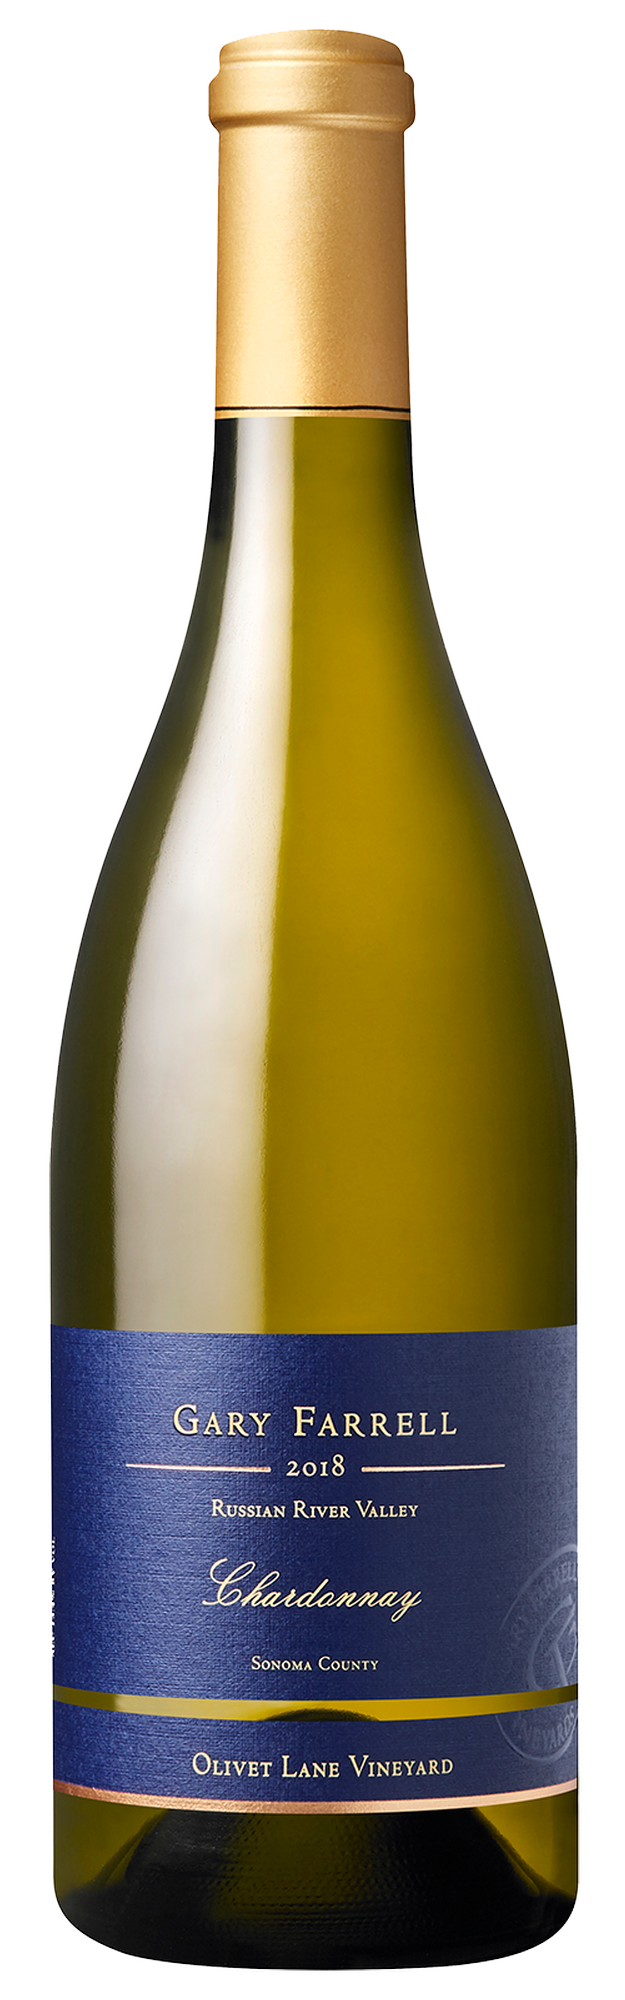 2018 Olivet Lane Vineyard Chardonnay